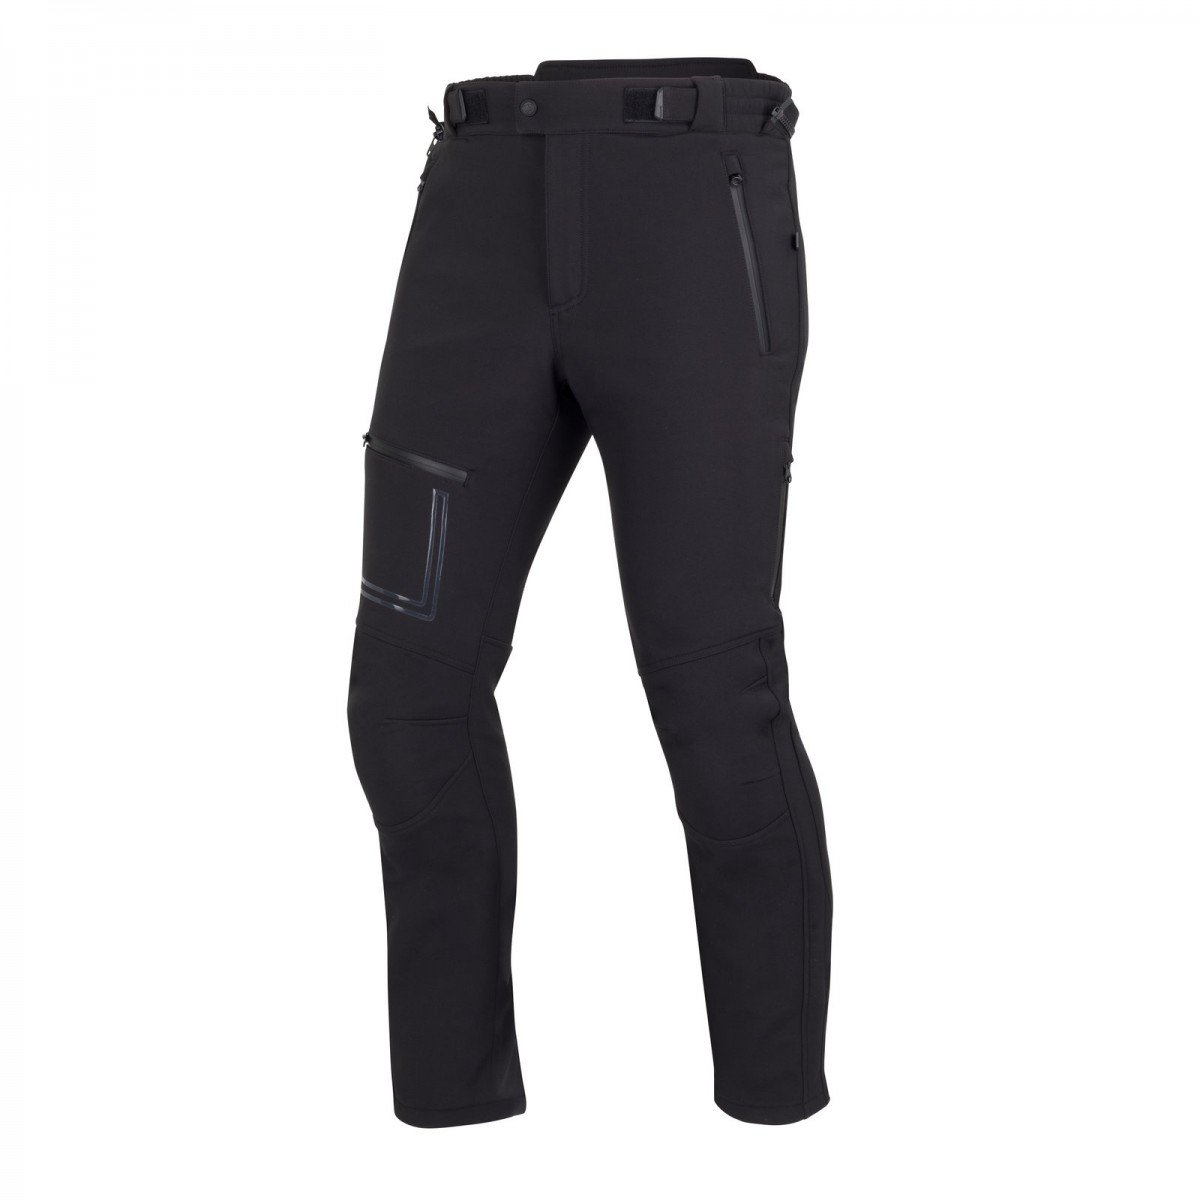 Image of Bering Alkor Trousers Black Size 4XL EN